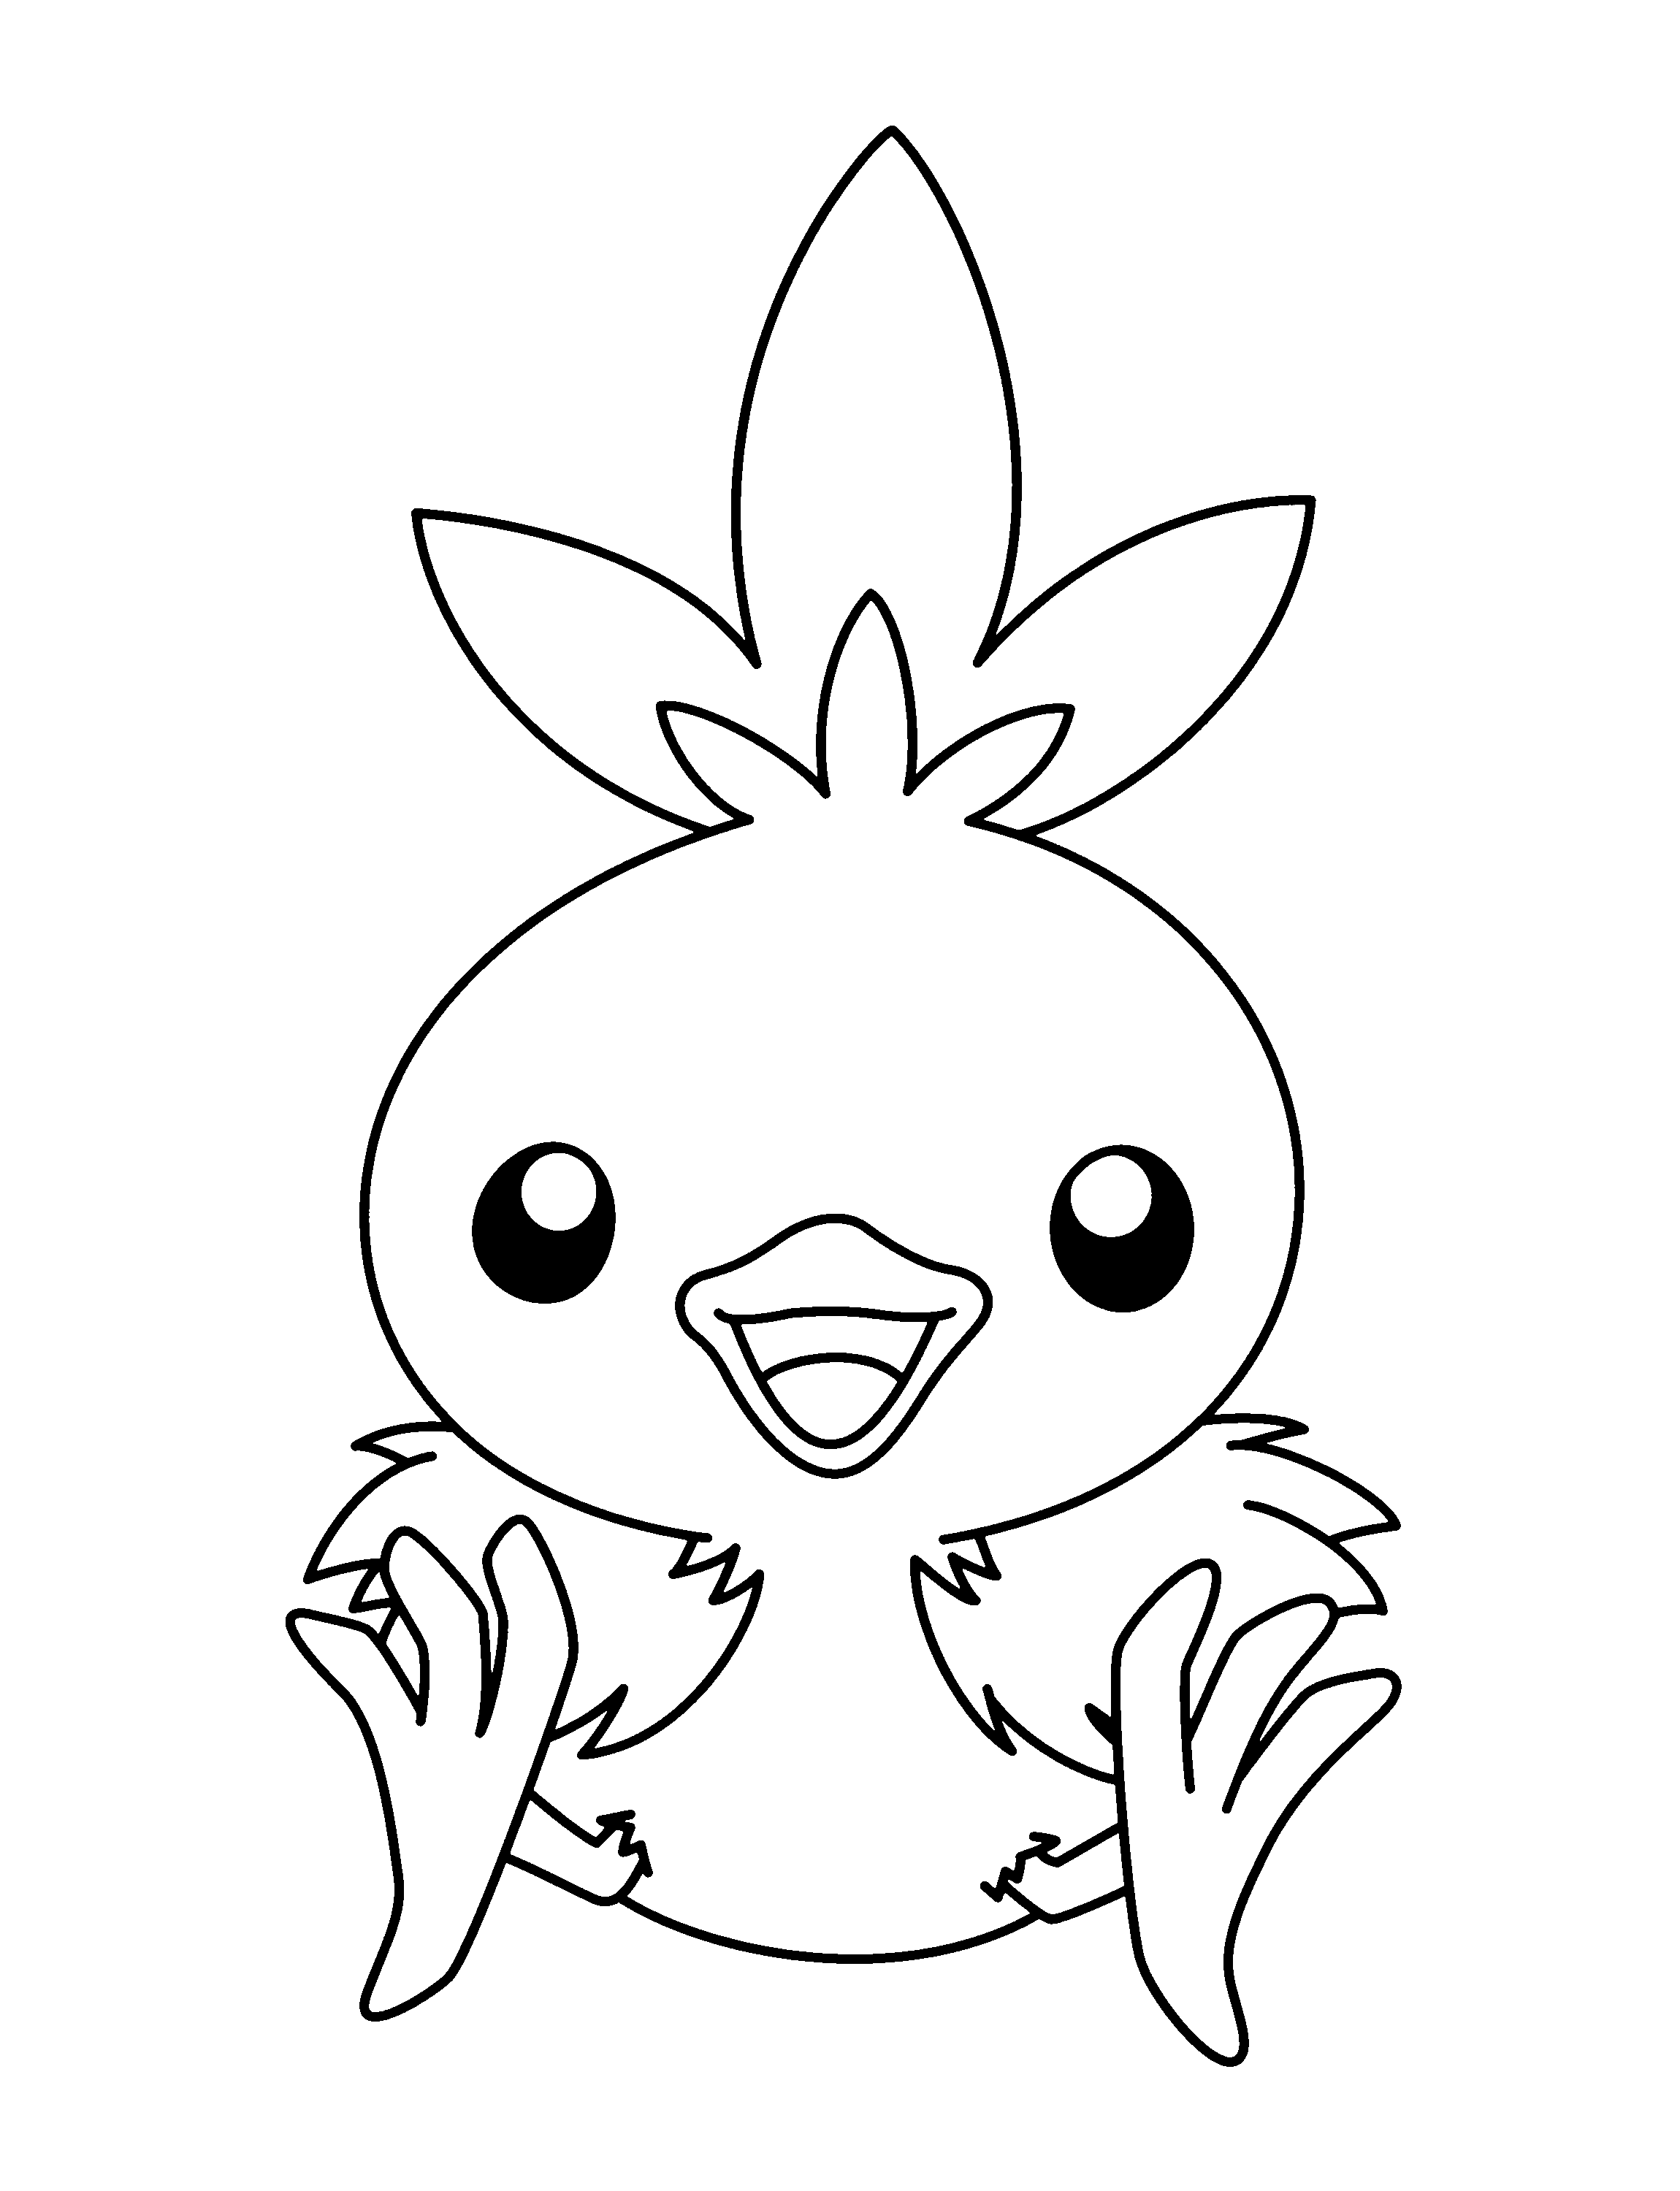 dibujo-para-colorear-pokemon-imagen-animada-0875